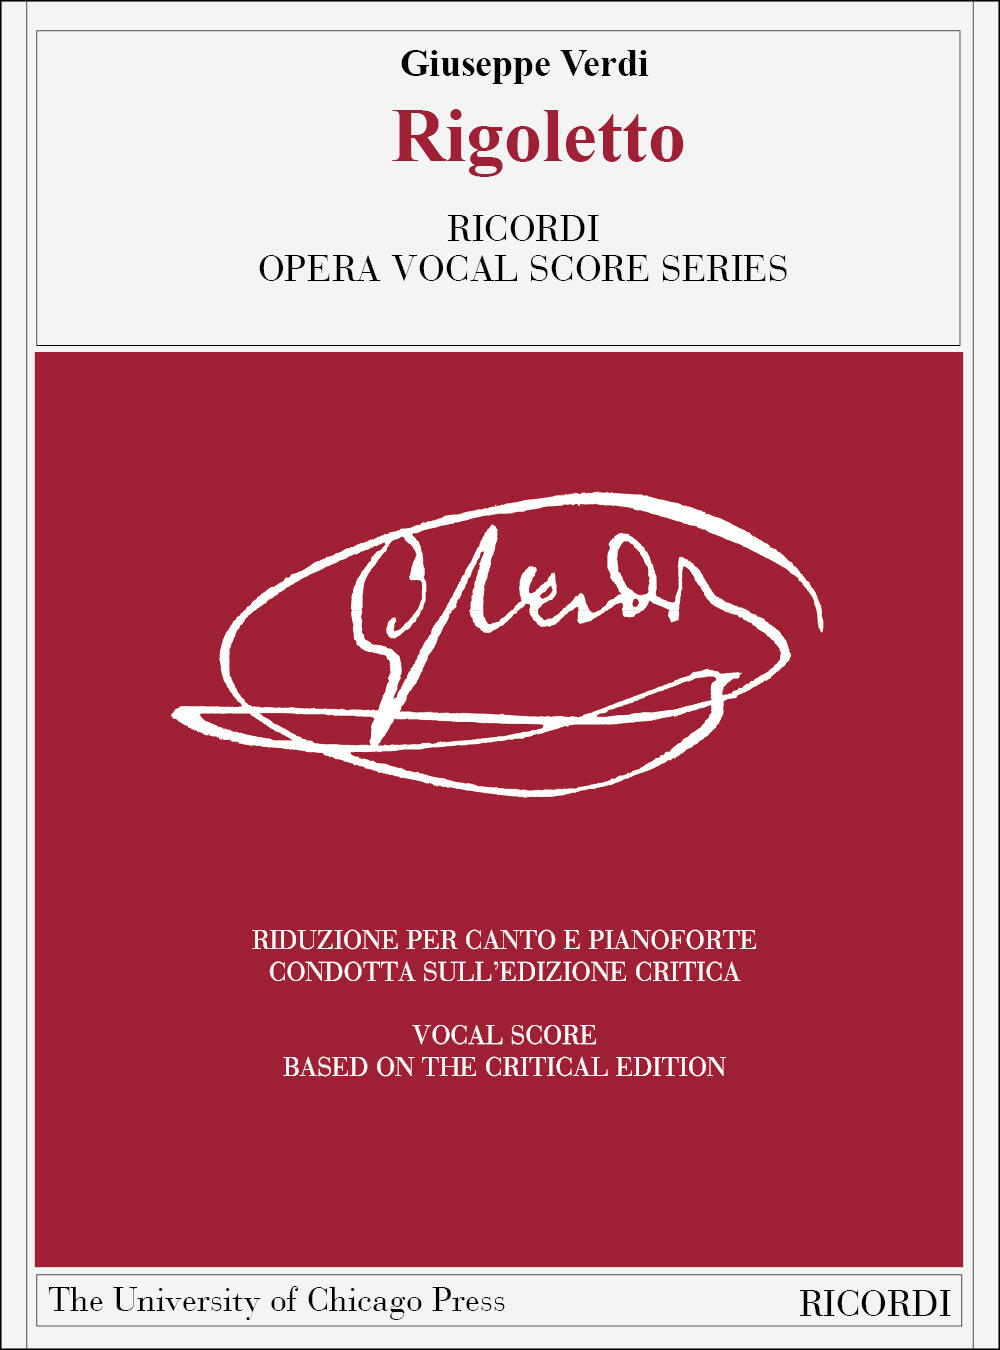 Rigoletto vocal score, based on critical edition : photo 1